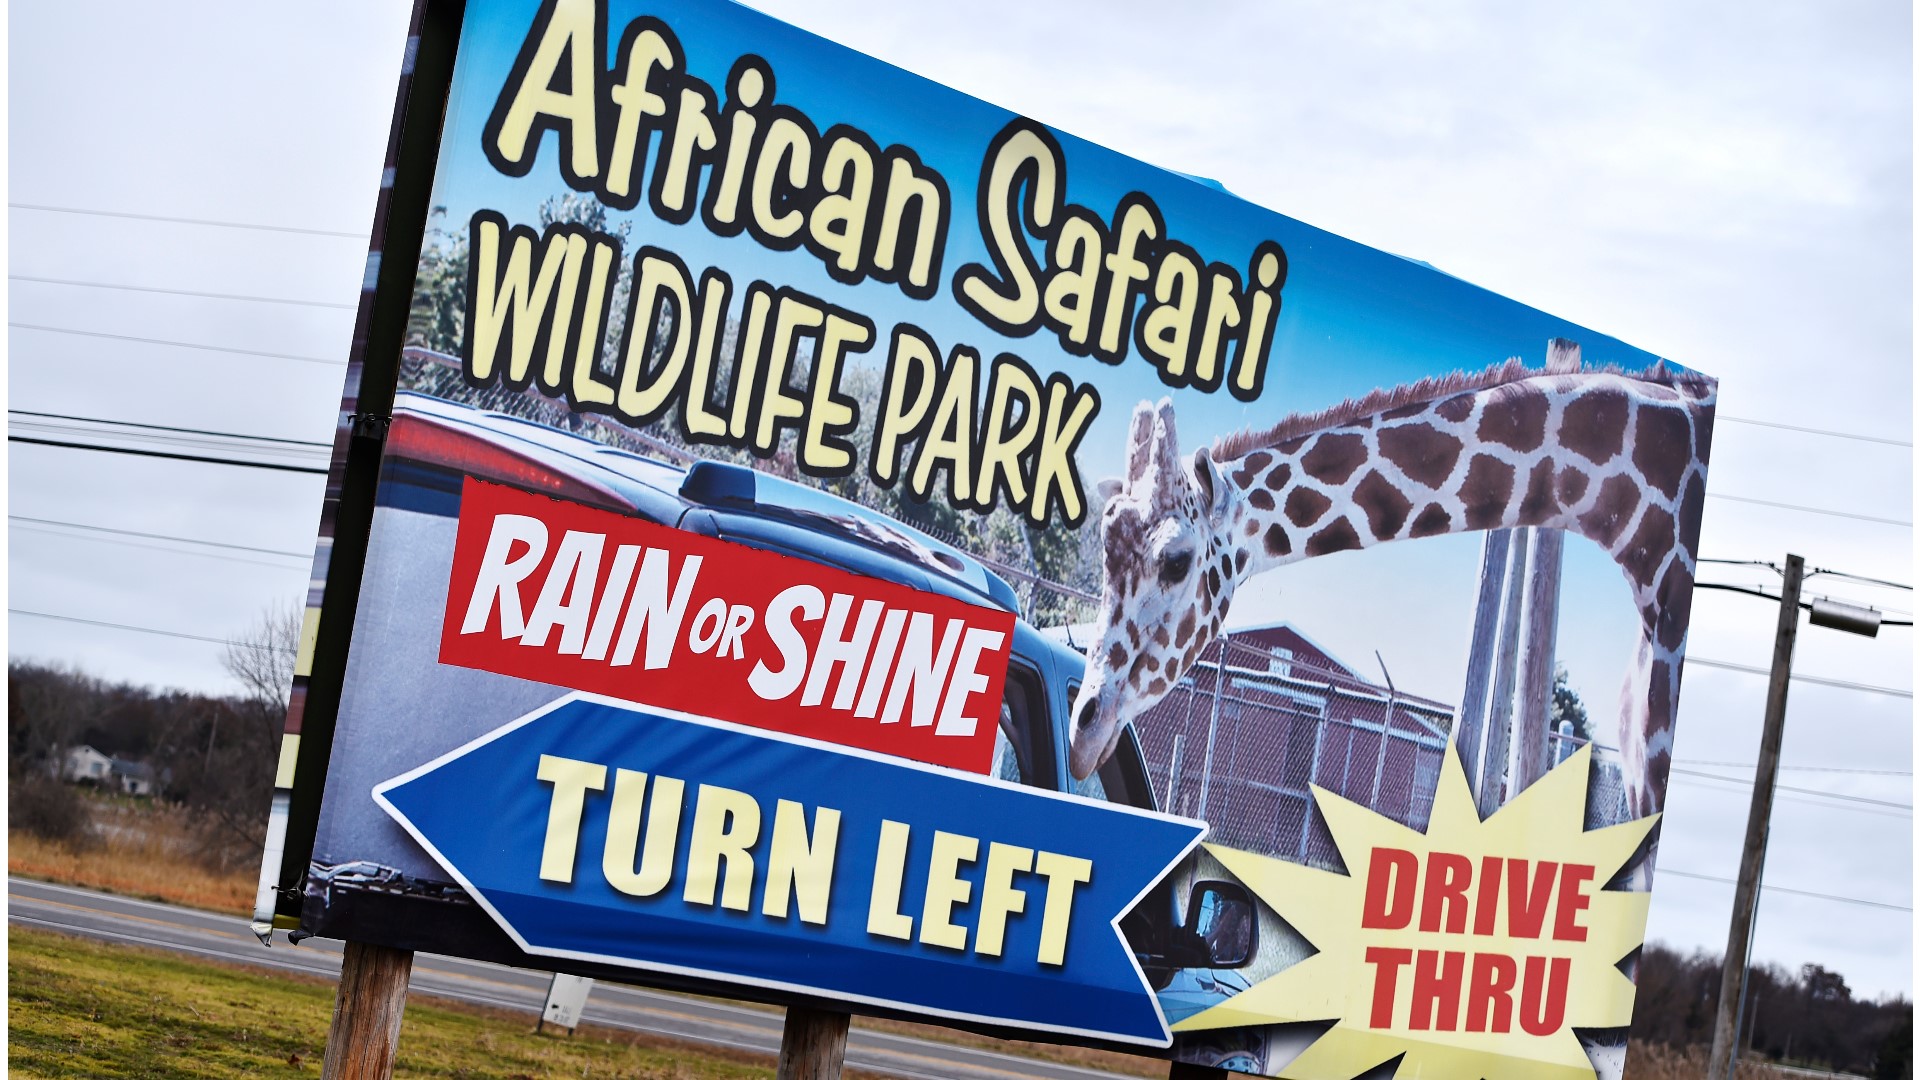 african safari port clinton ohio prices